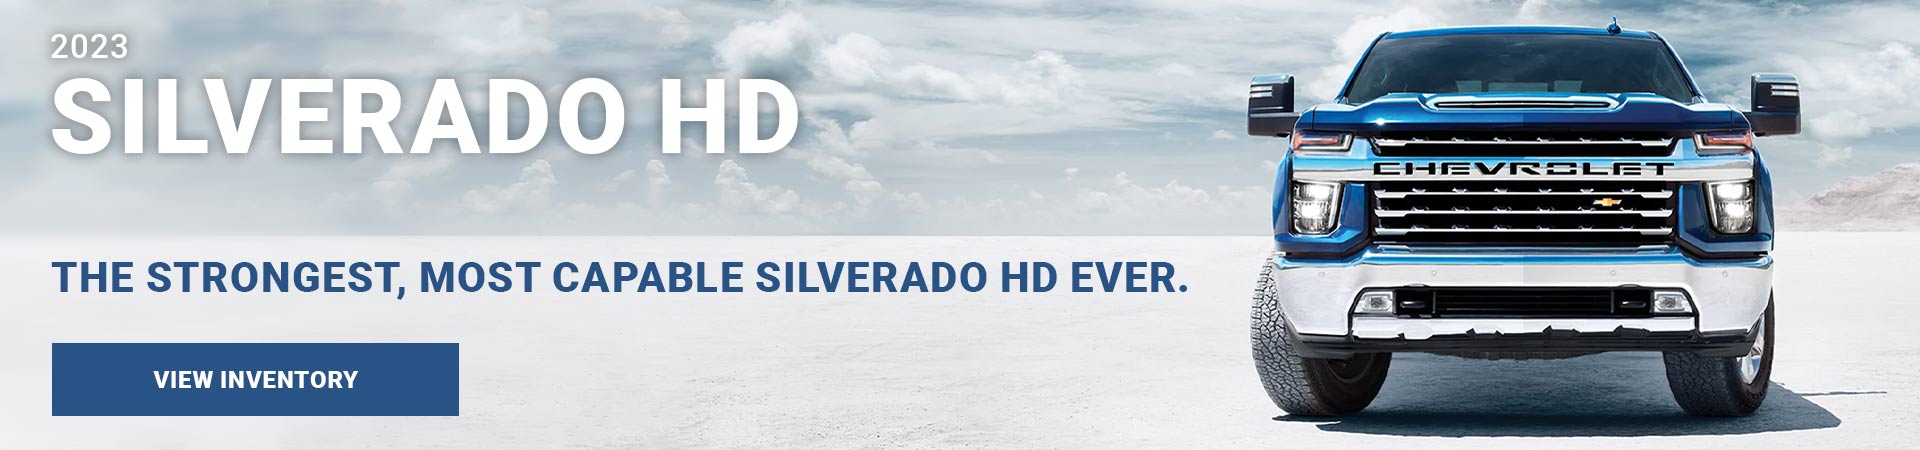 2023 Silverado HD